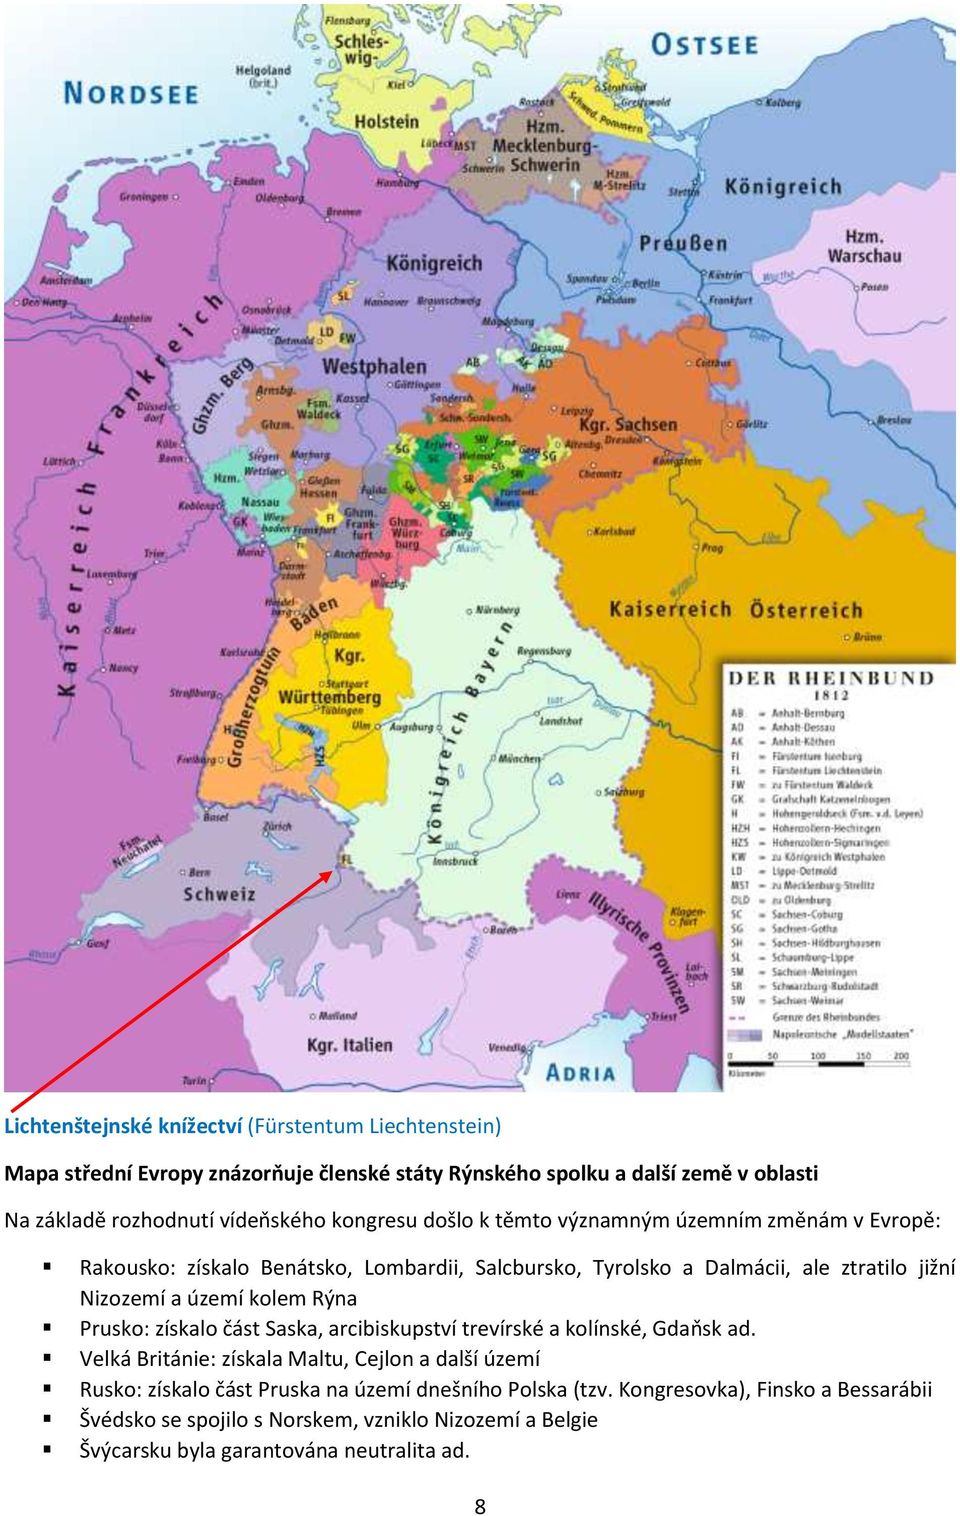 Nizozemí a území kolem Rýna Prusko: získalo část Saska, arcibiskupství trevírské a kolínské, Gdaňsk ad.